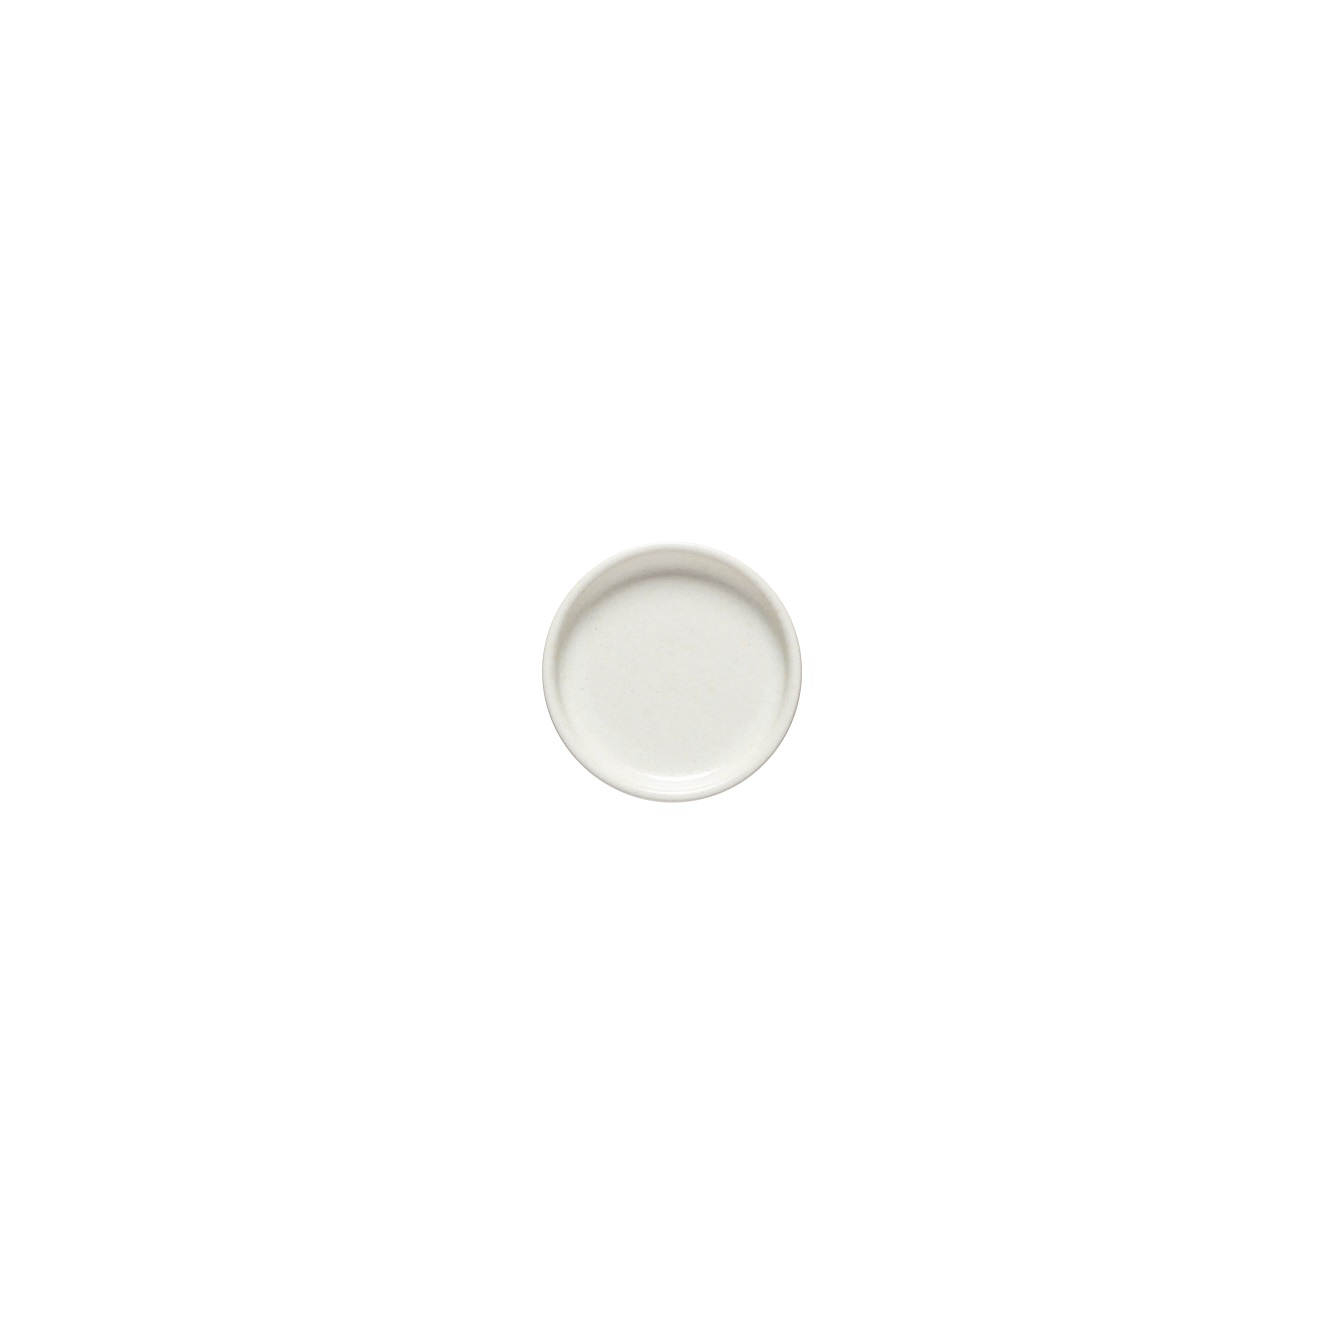 Redonda White Round Plate 8cm Gift